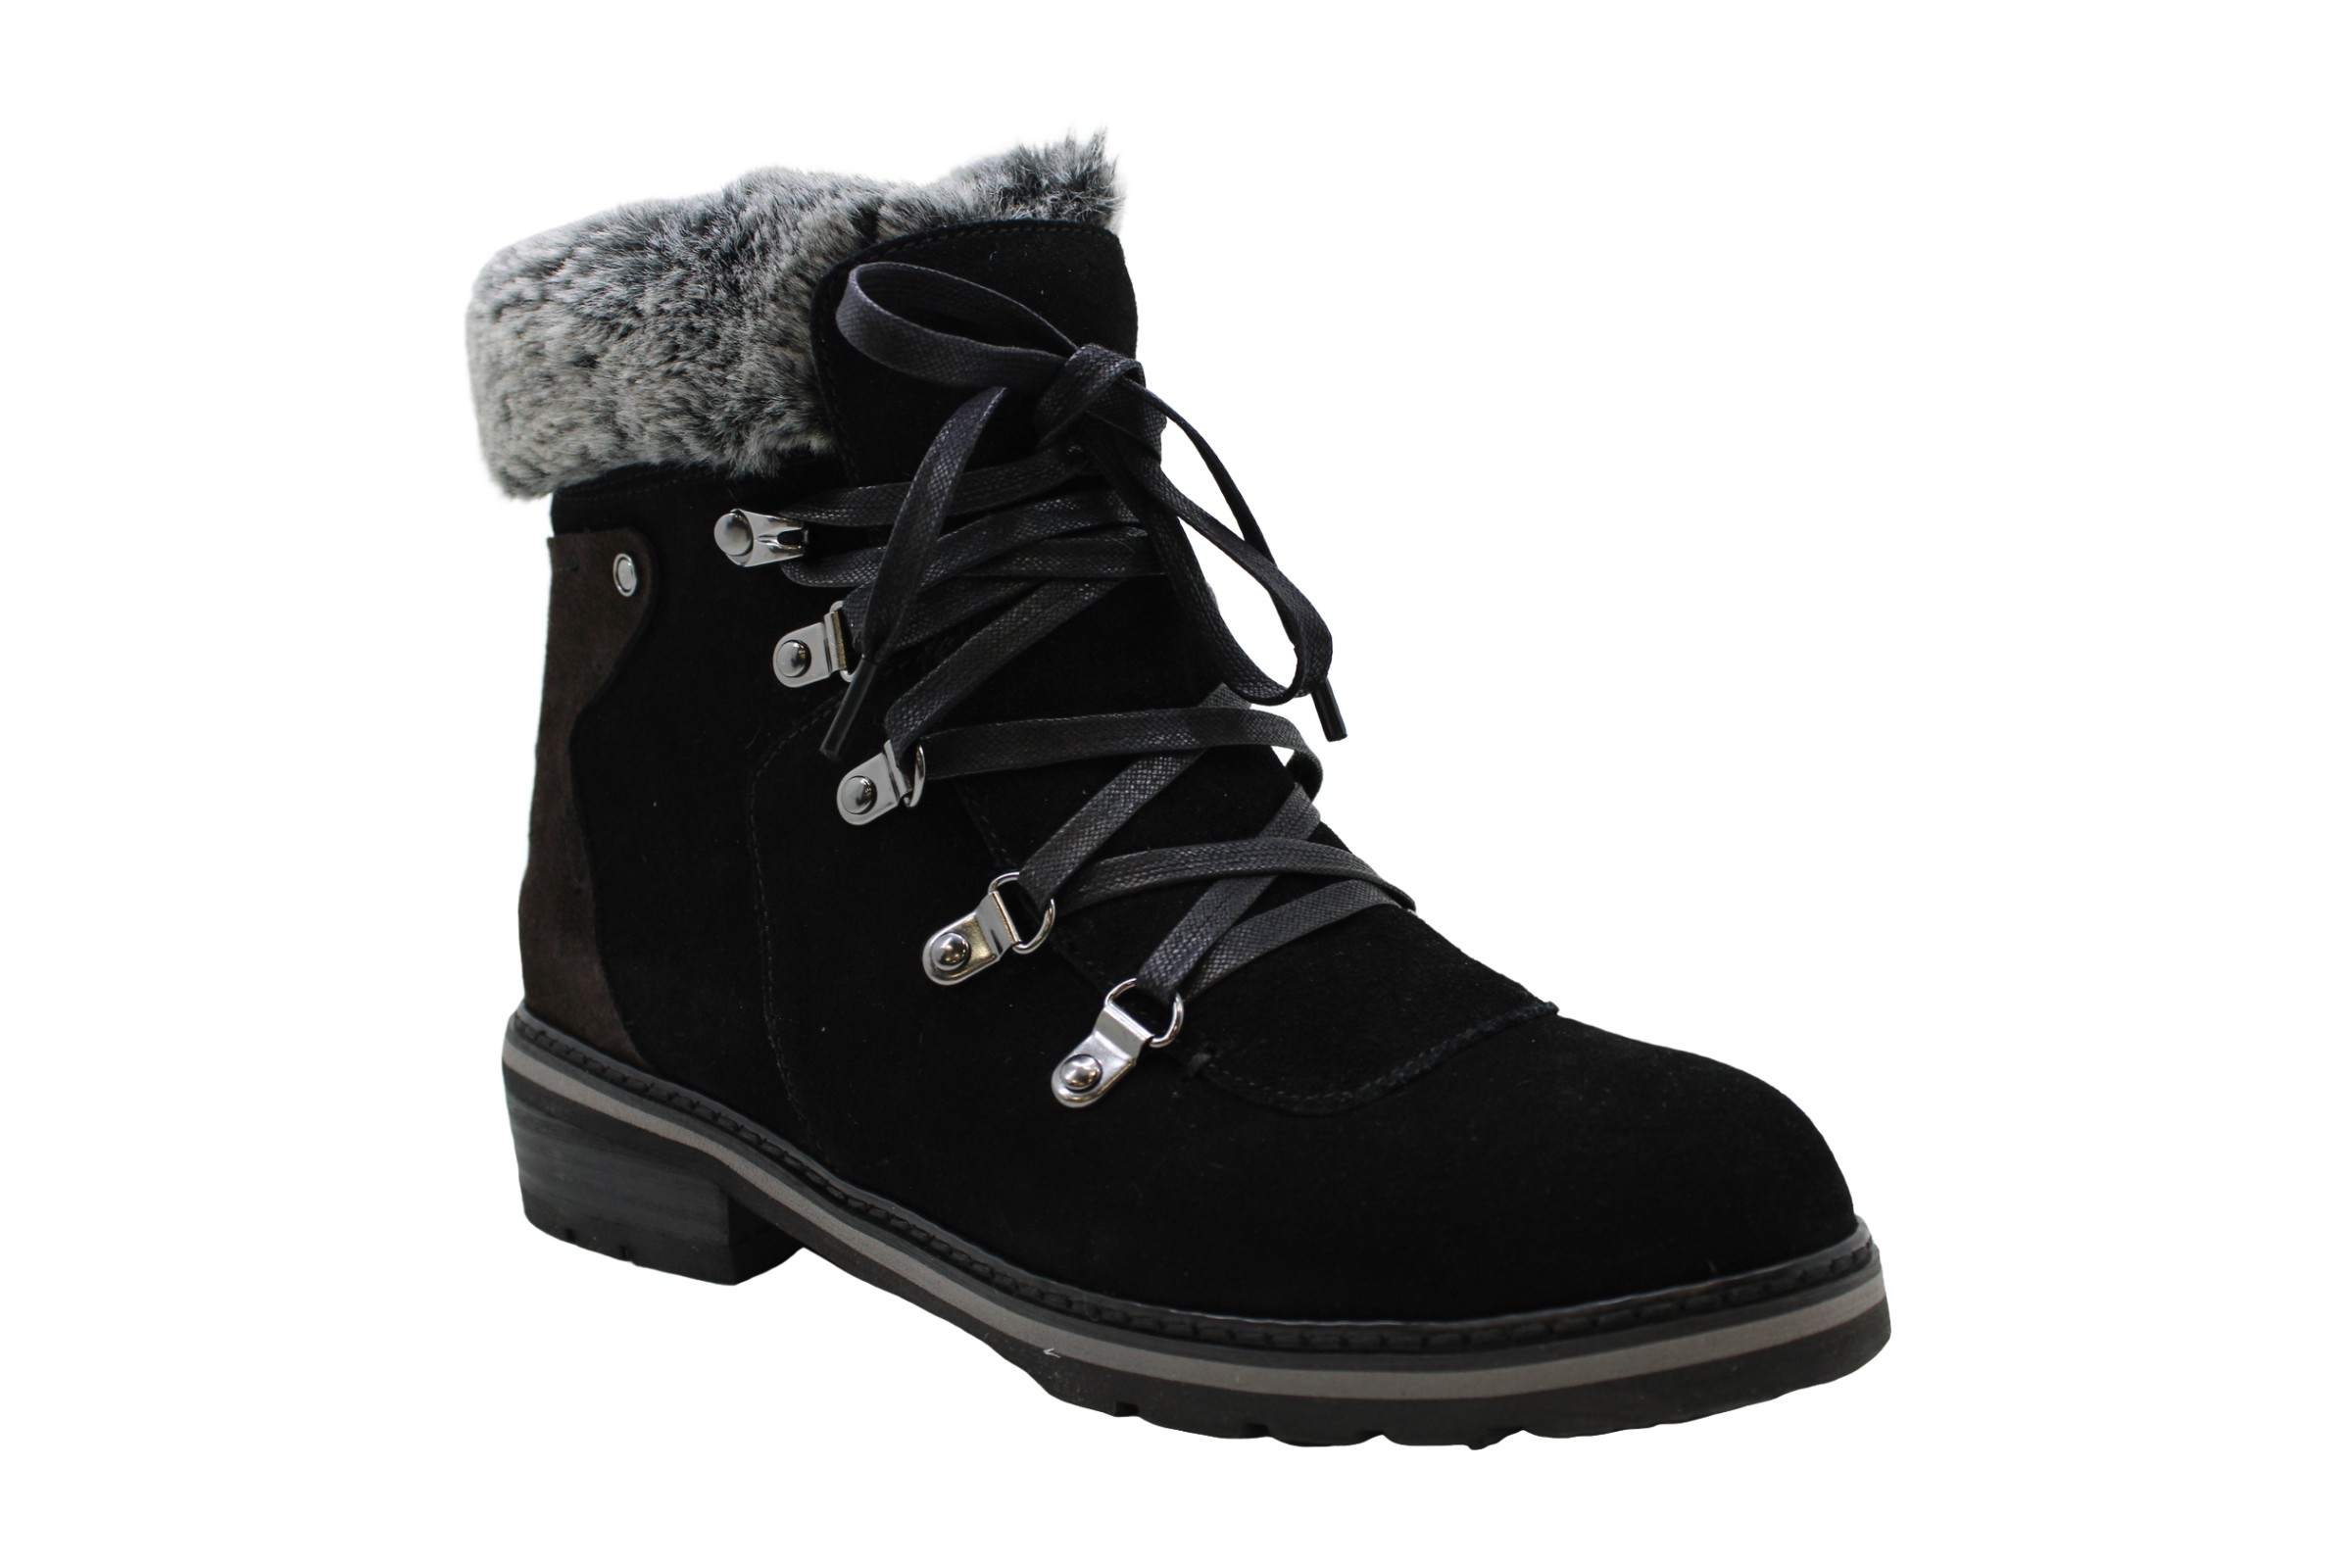 Aqua College Womens Boots in Black Color, Size 6 ZAK | eBay